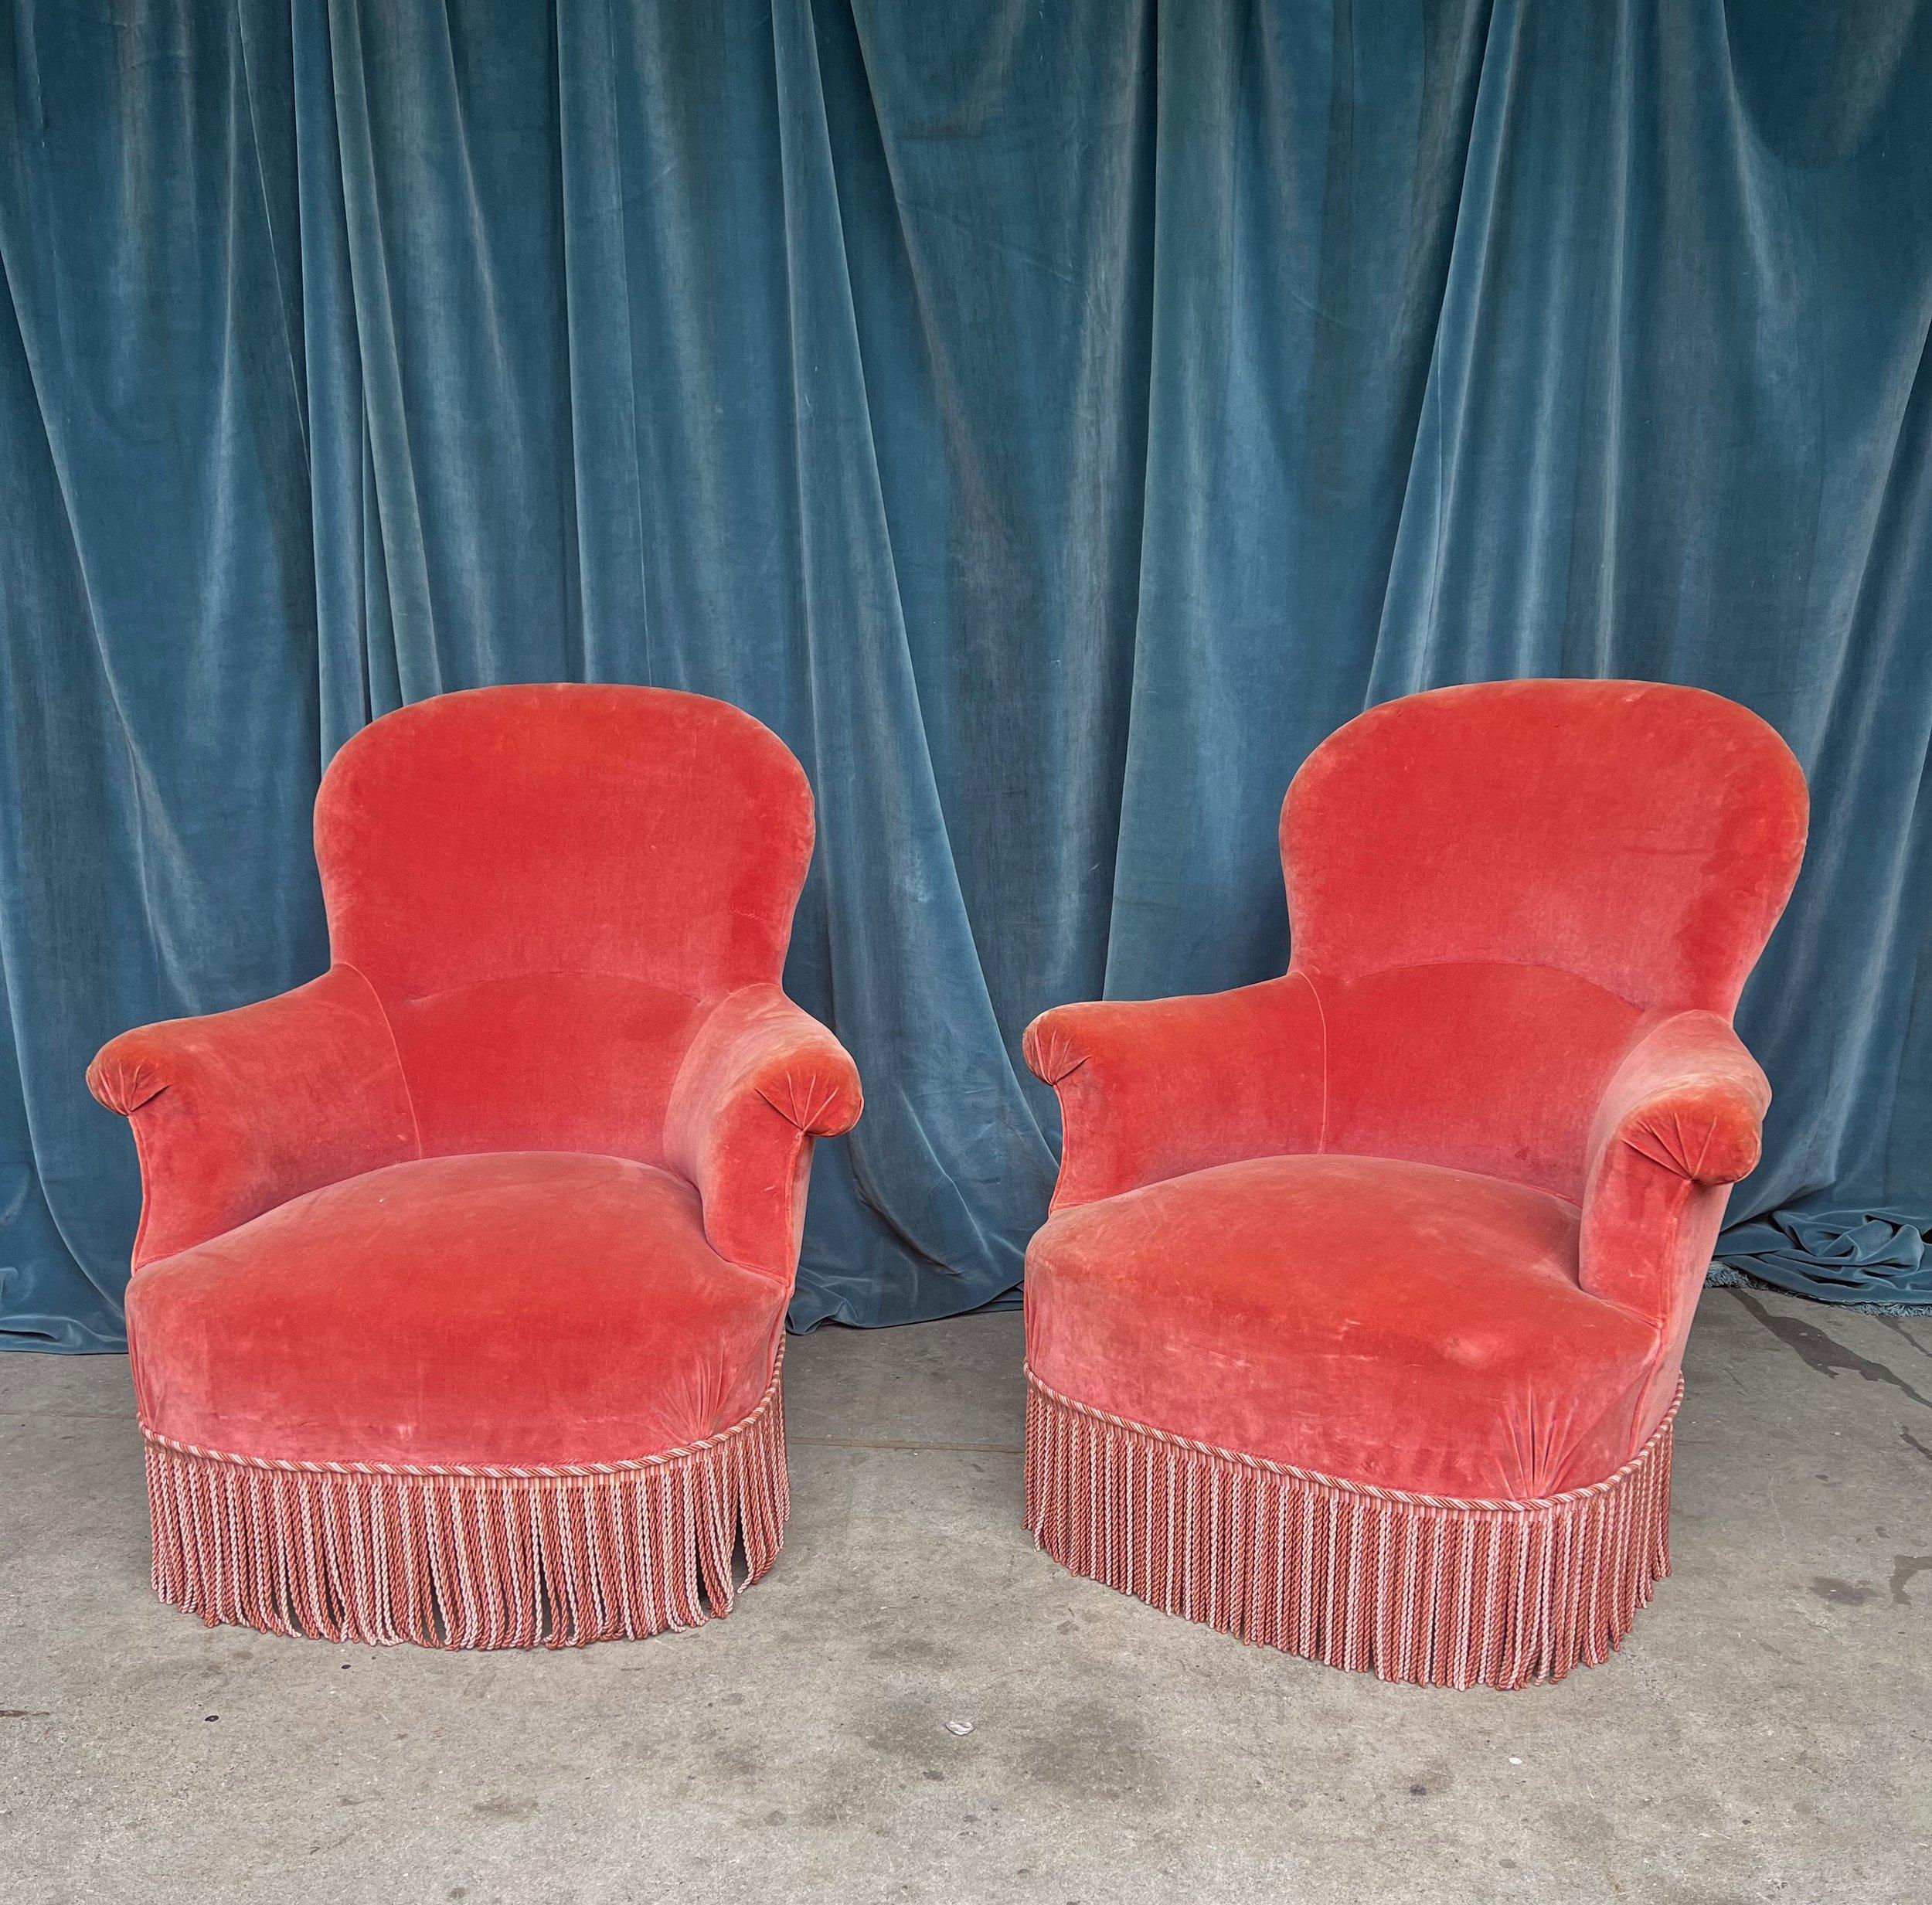 Ein wunderbar proportioniertes Paar französischer Napoleon-III-Sessel aus dem 19. Jahrhundert, die zeitlose Eleganz und Raffinesse ausstrahlen. Diese atemberaubenden Stühle sind mit rosa Samt im Vintage-Stil gepolstert und werden durch